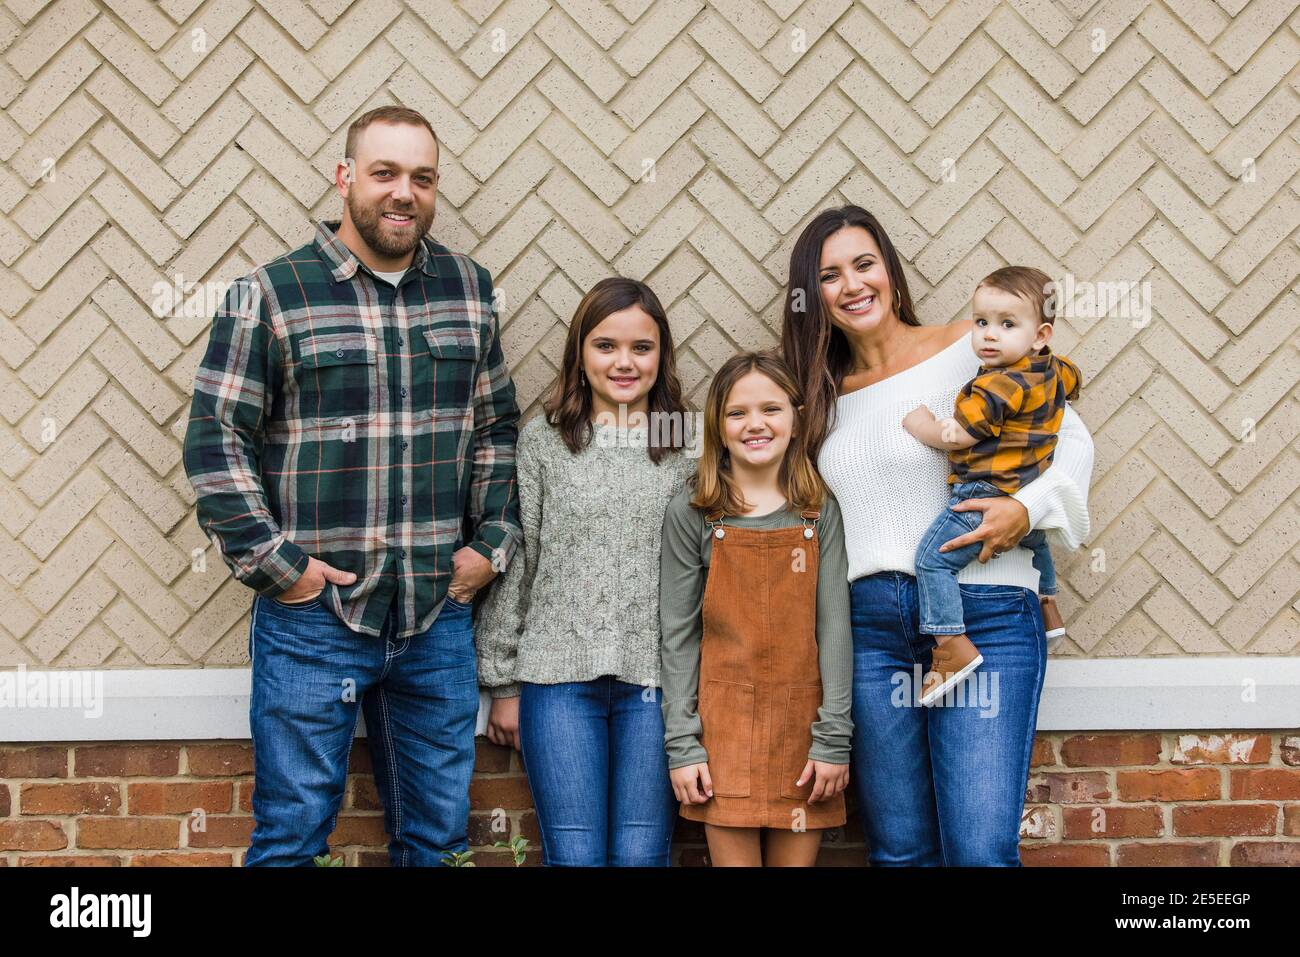 Eine fünfköpfige Familie mit zwei Mädchen und einem Baby Junge, der vor einem Ziegelsteinheringbone steht Stockfoto